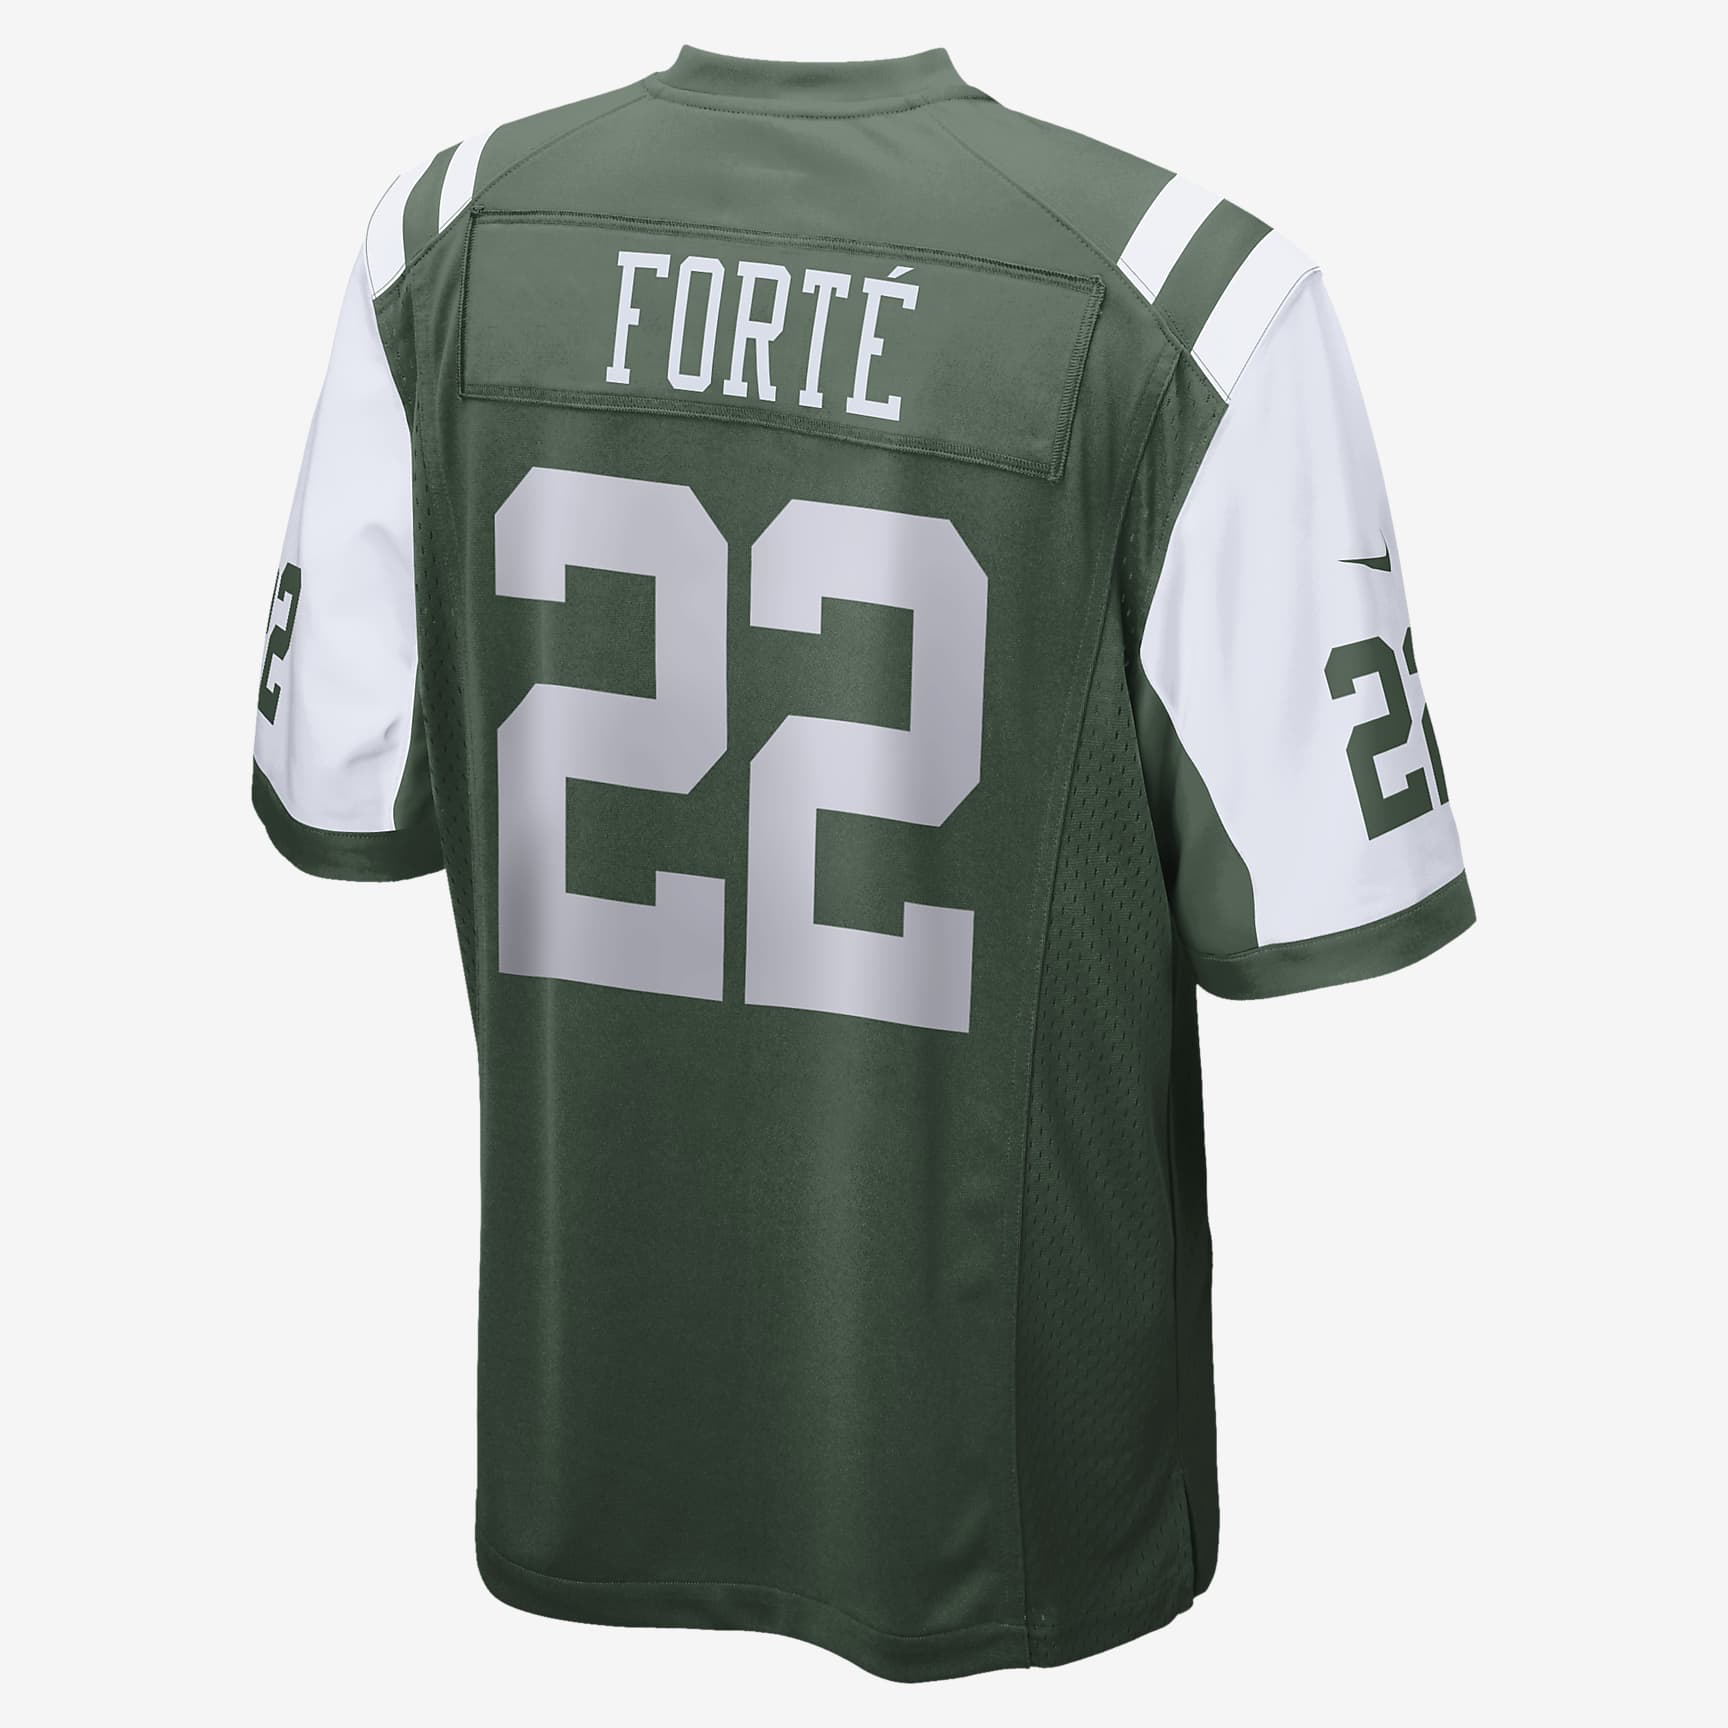 NFL New York Jets (Matt Forte) Men's American Football Game Jersey. Nike PT